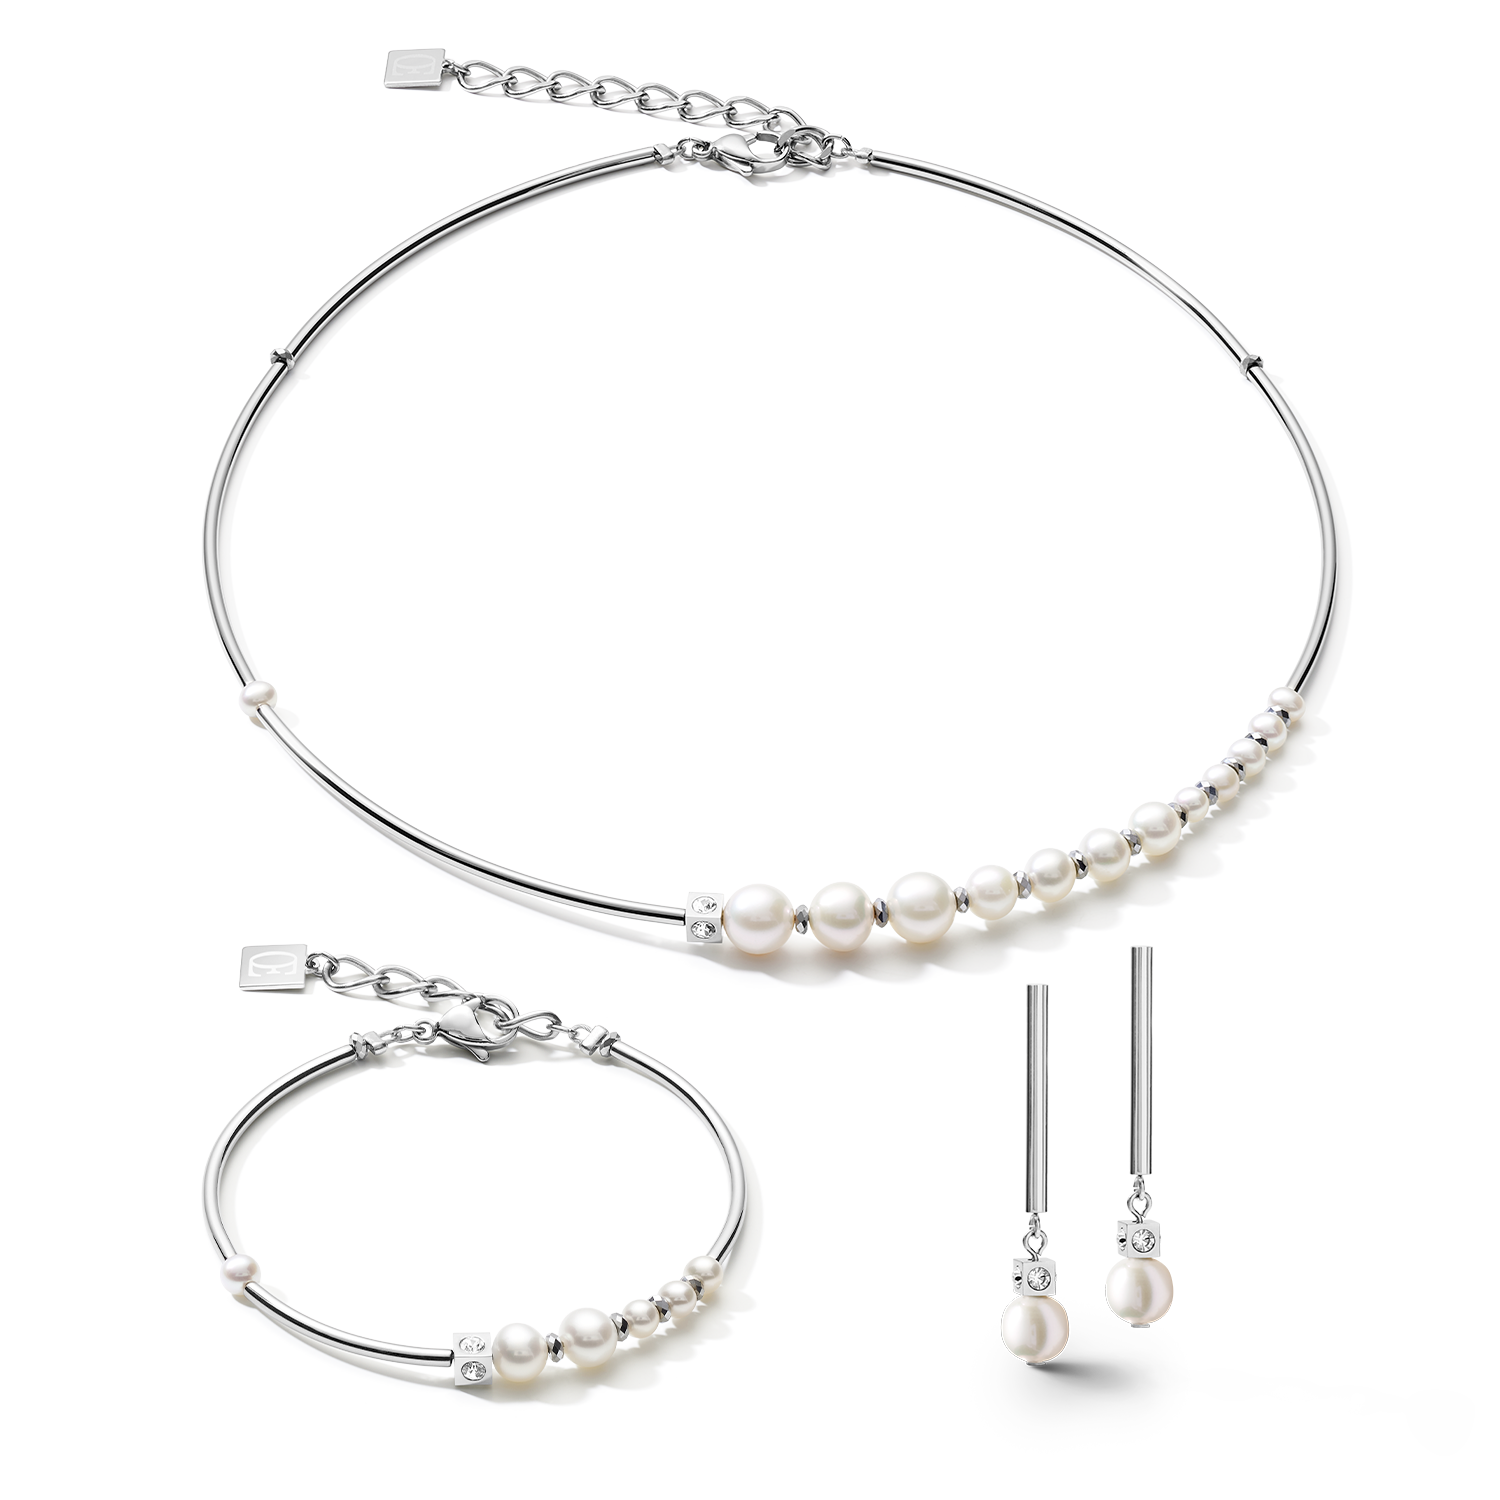 Orecchini Asimmetria perle d'acqua dolce e acciaio inossidabile bianco-argento